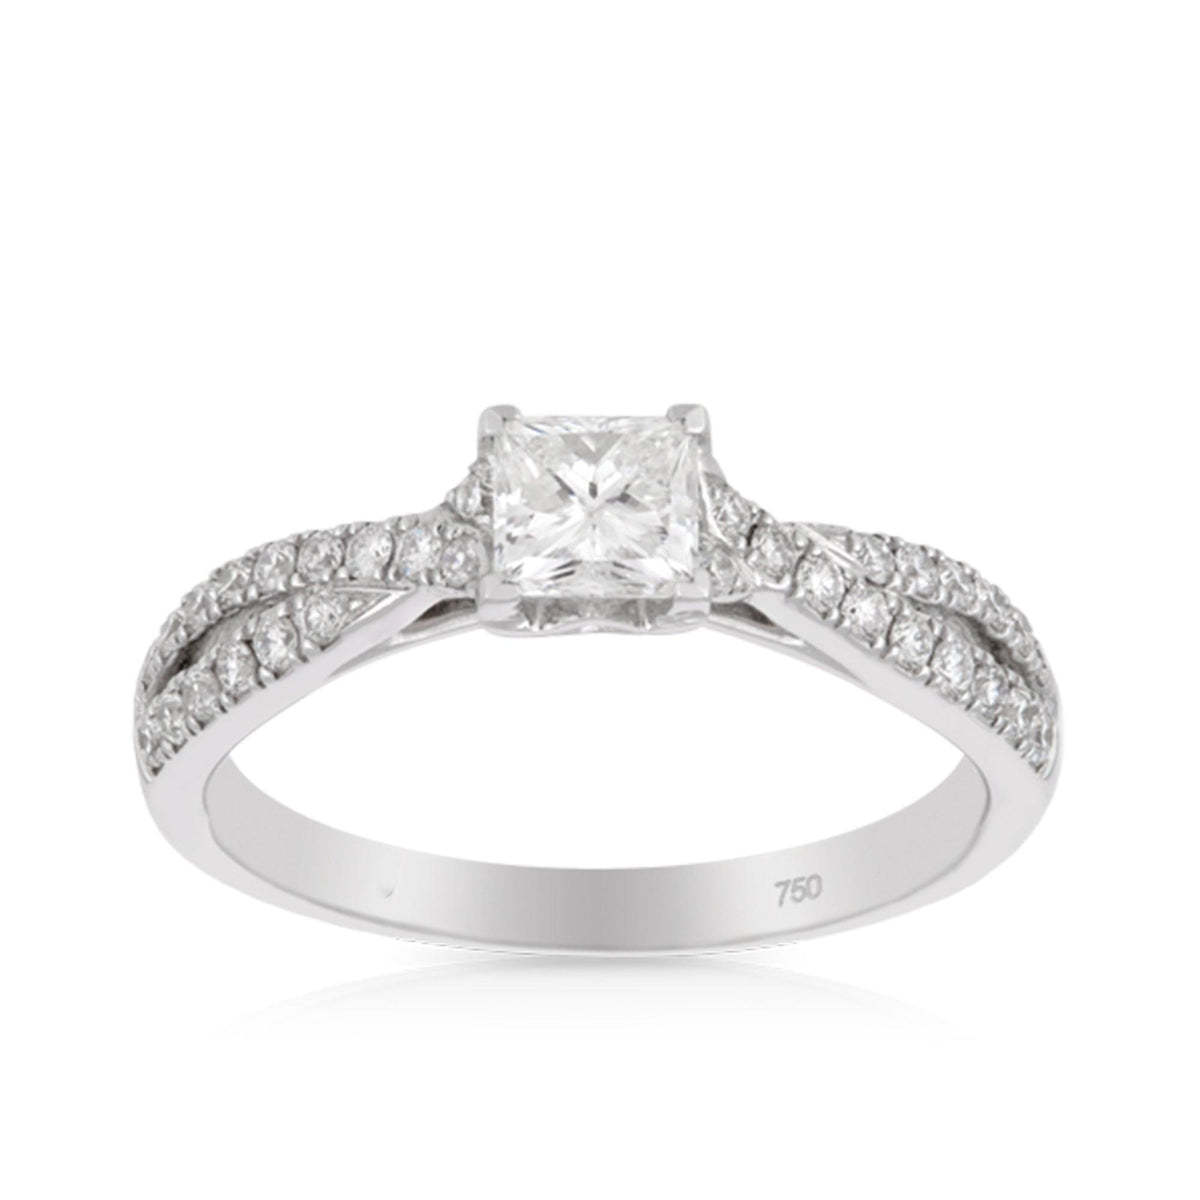 Princess Cut Diamond Engagement Ring in 18ct White Gold TDW 0.820 - Wallace Bishop